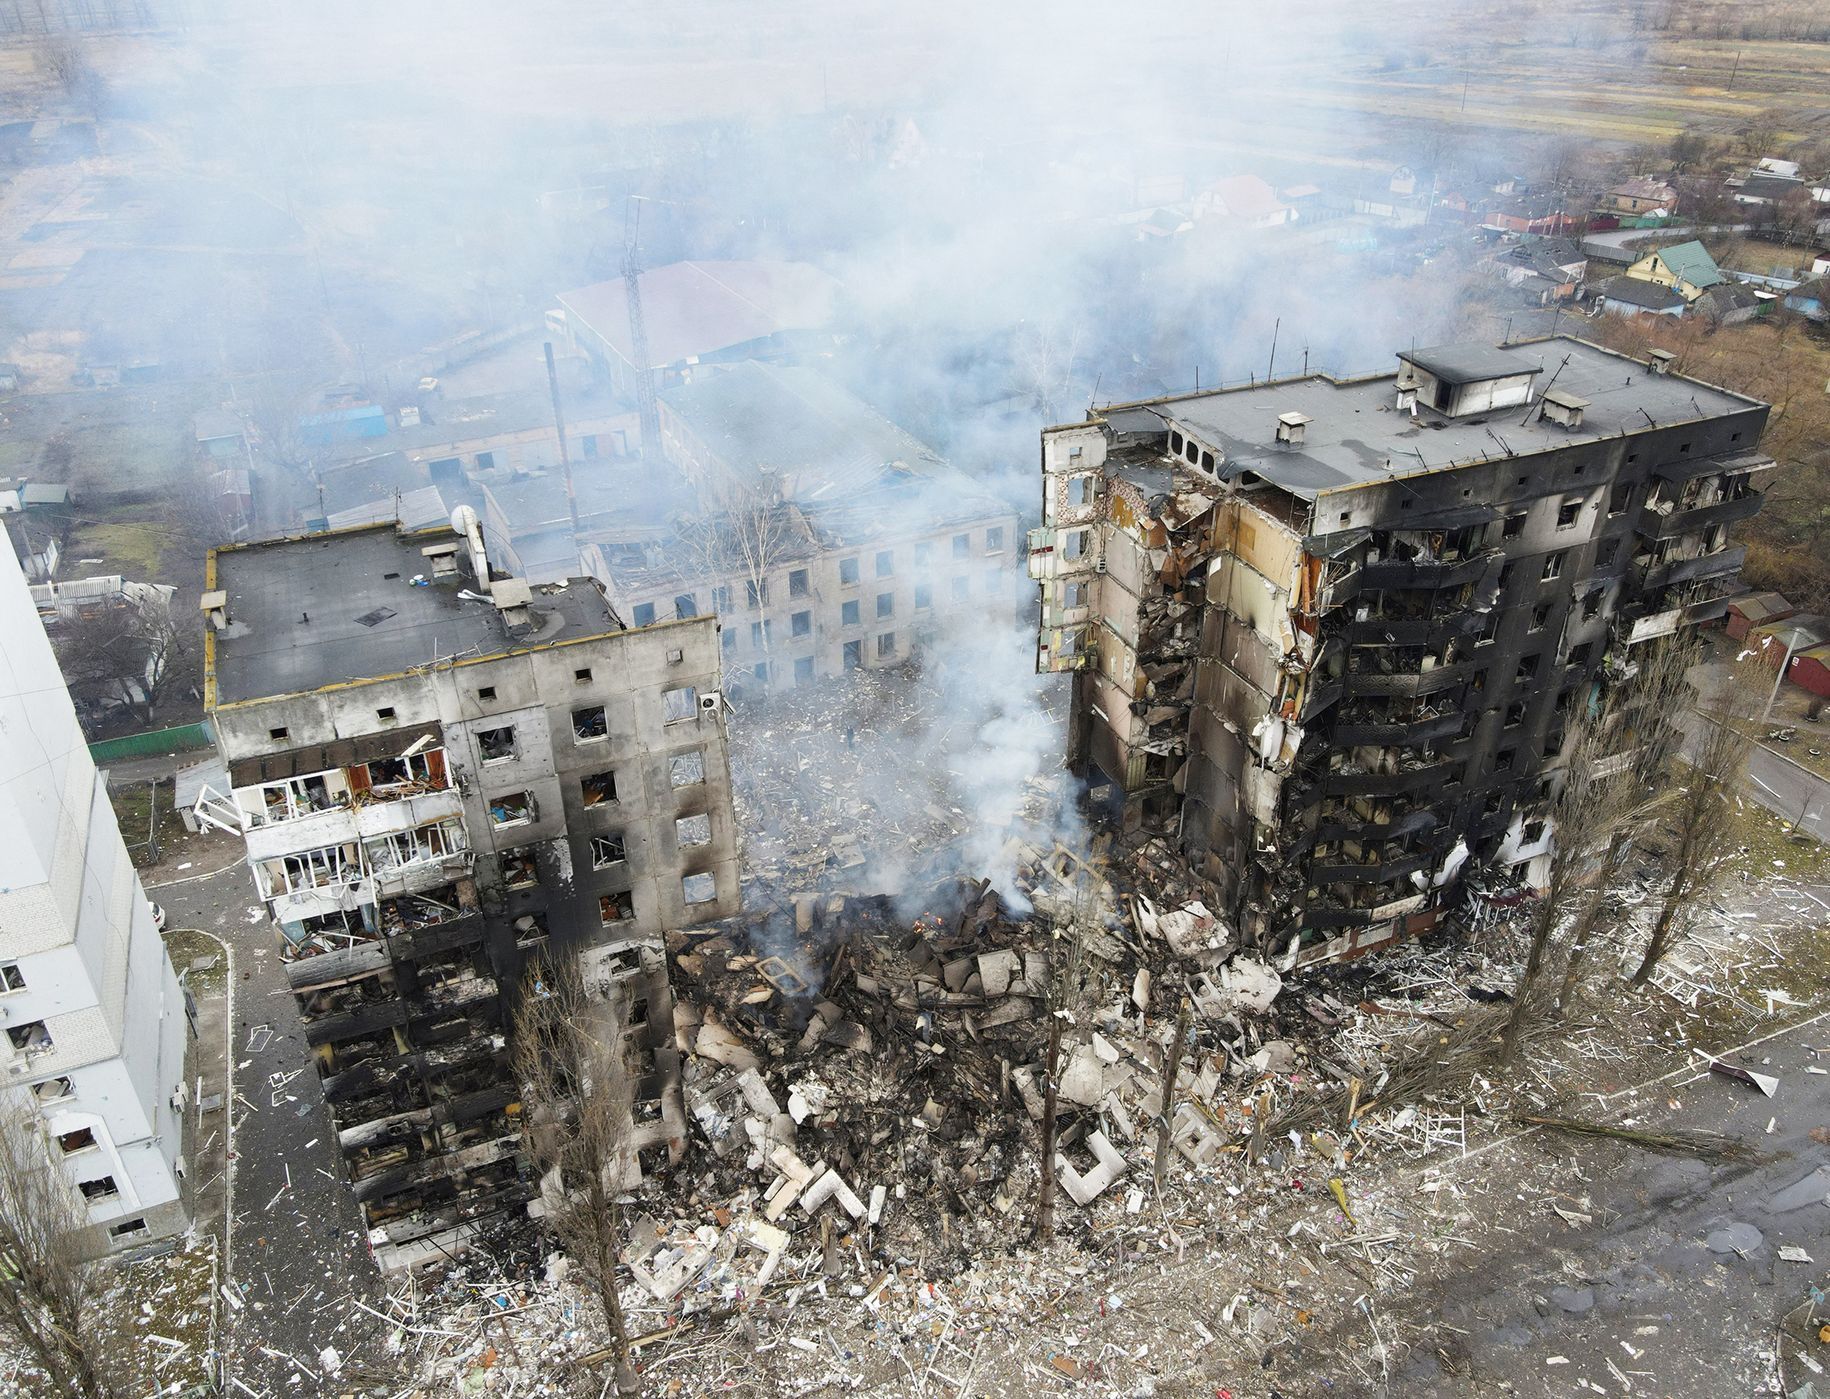 Foto / Boroďjanka / Ukrajina / Bombardování / 3. 3. 2022